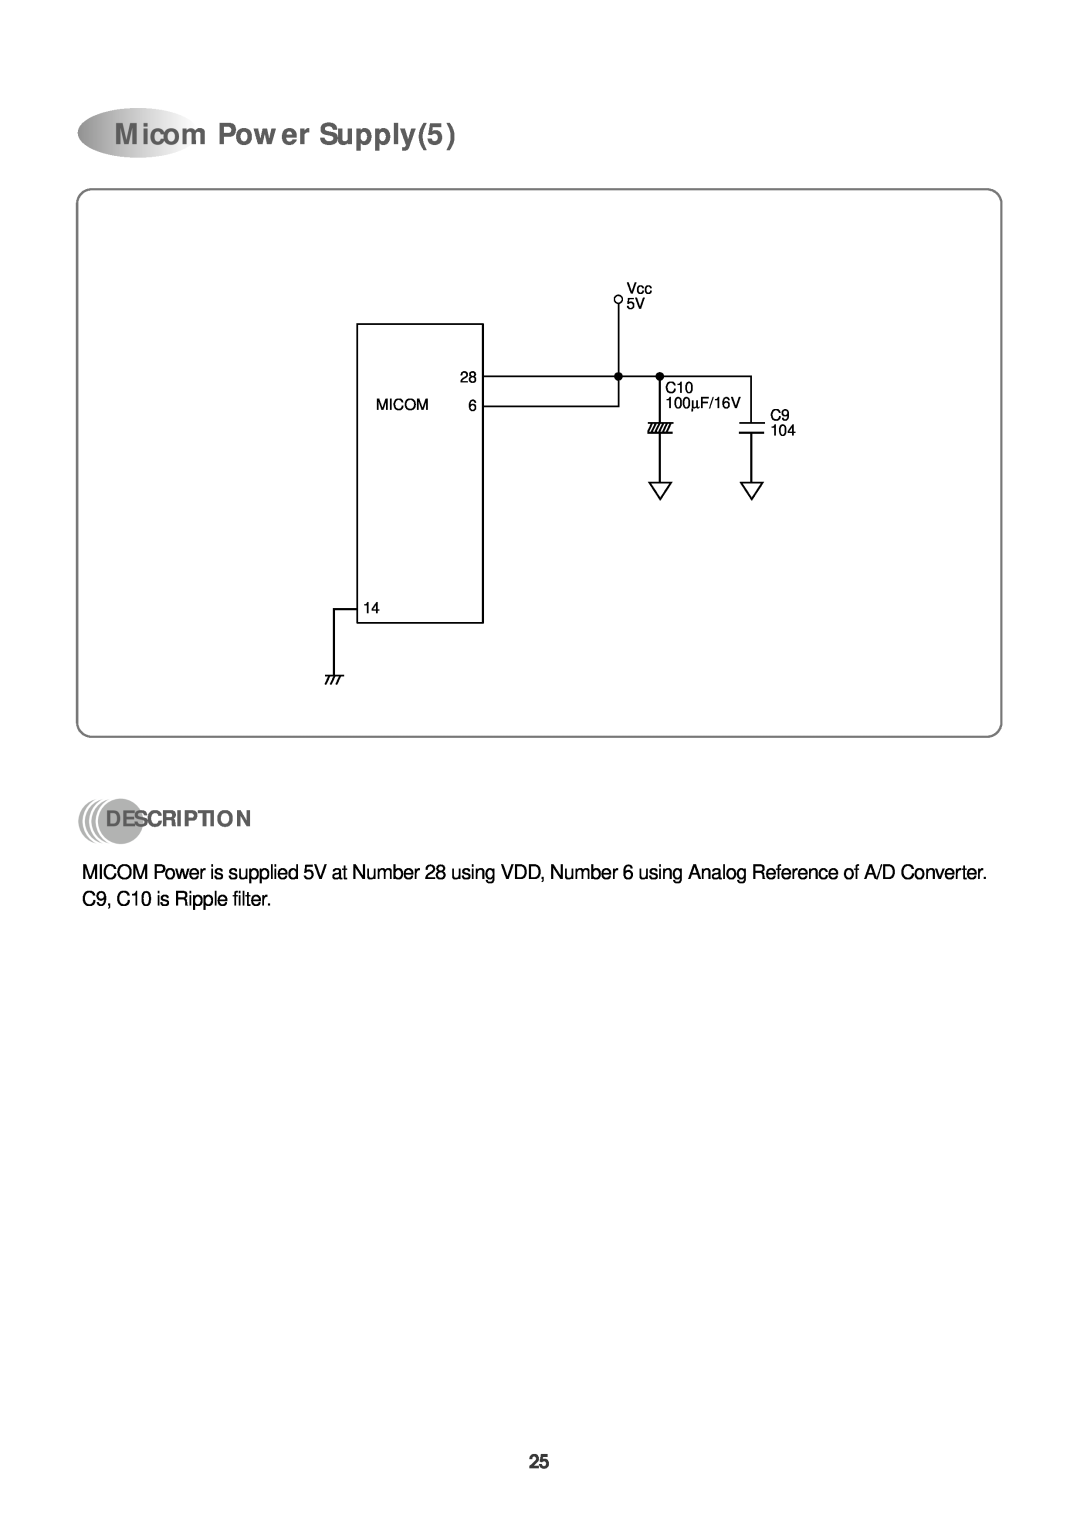 Daewoo DWC-121R service manual Micom Power Supply5, Description, Vcc 5V C10 100∝ F/16V C9 